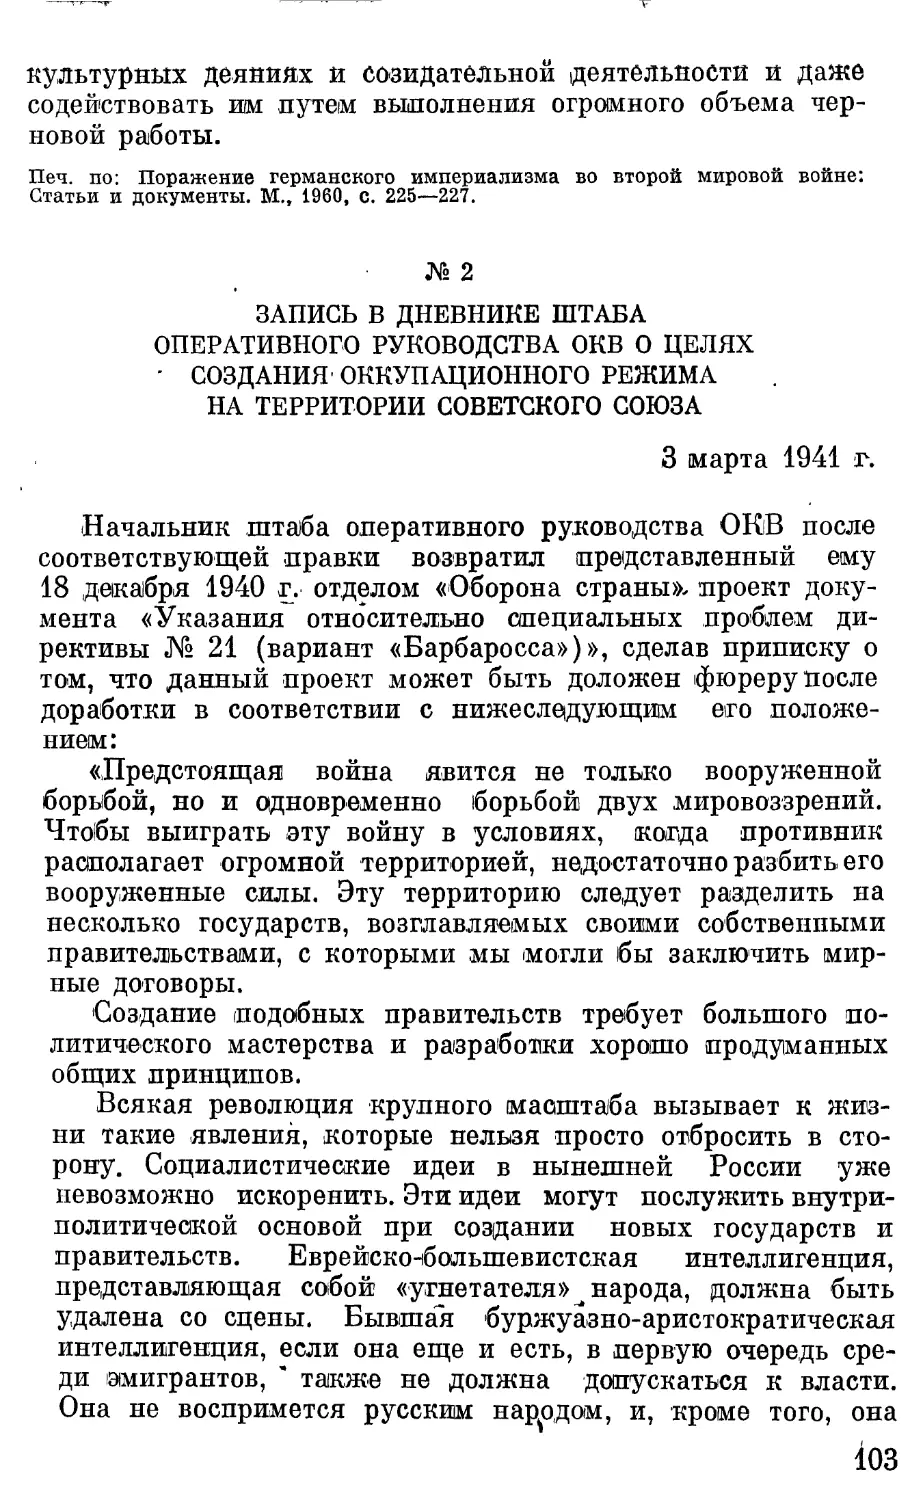 Запись в дневнике штаба оперативного руководства ОКБ о целях создания оккупационного режима на территории Советского Союза.